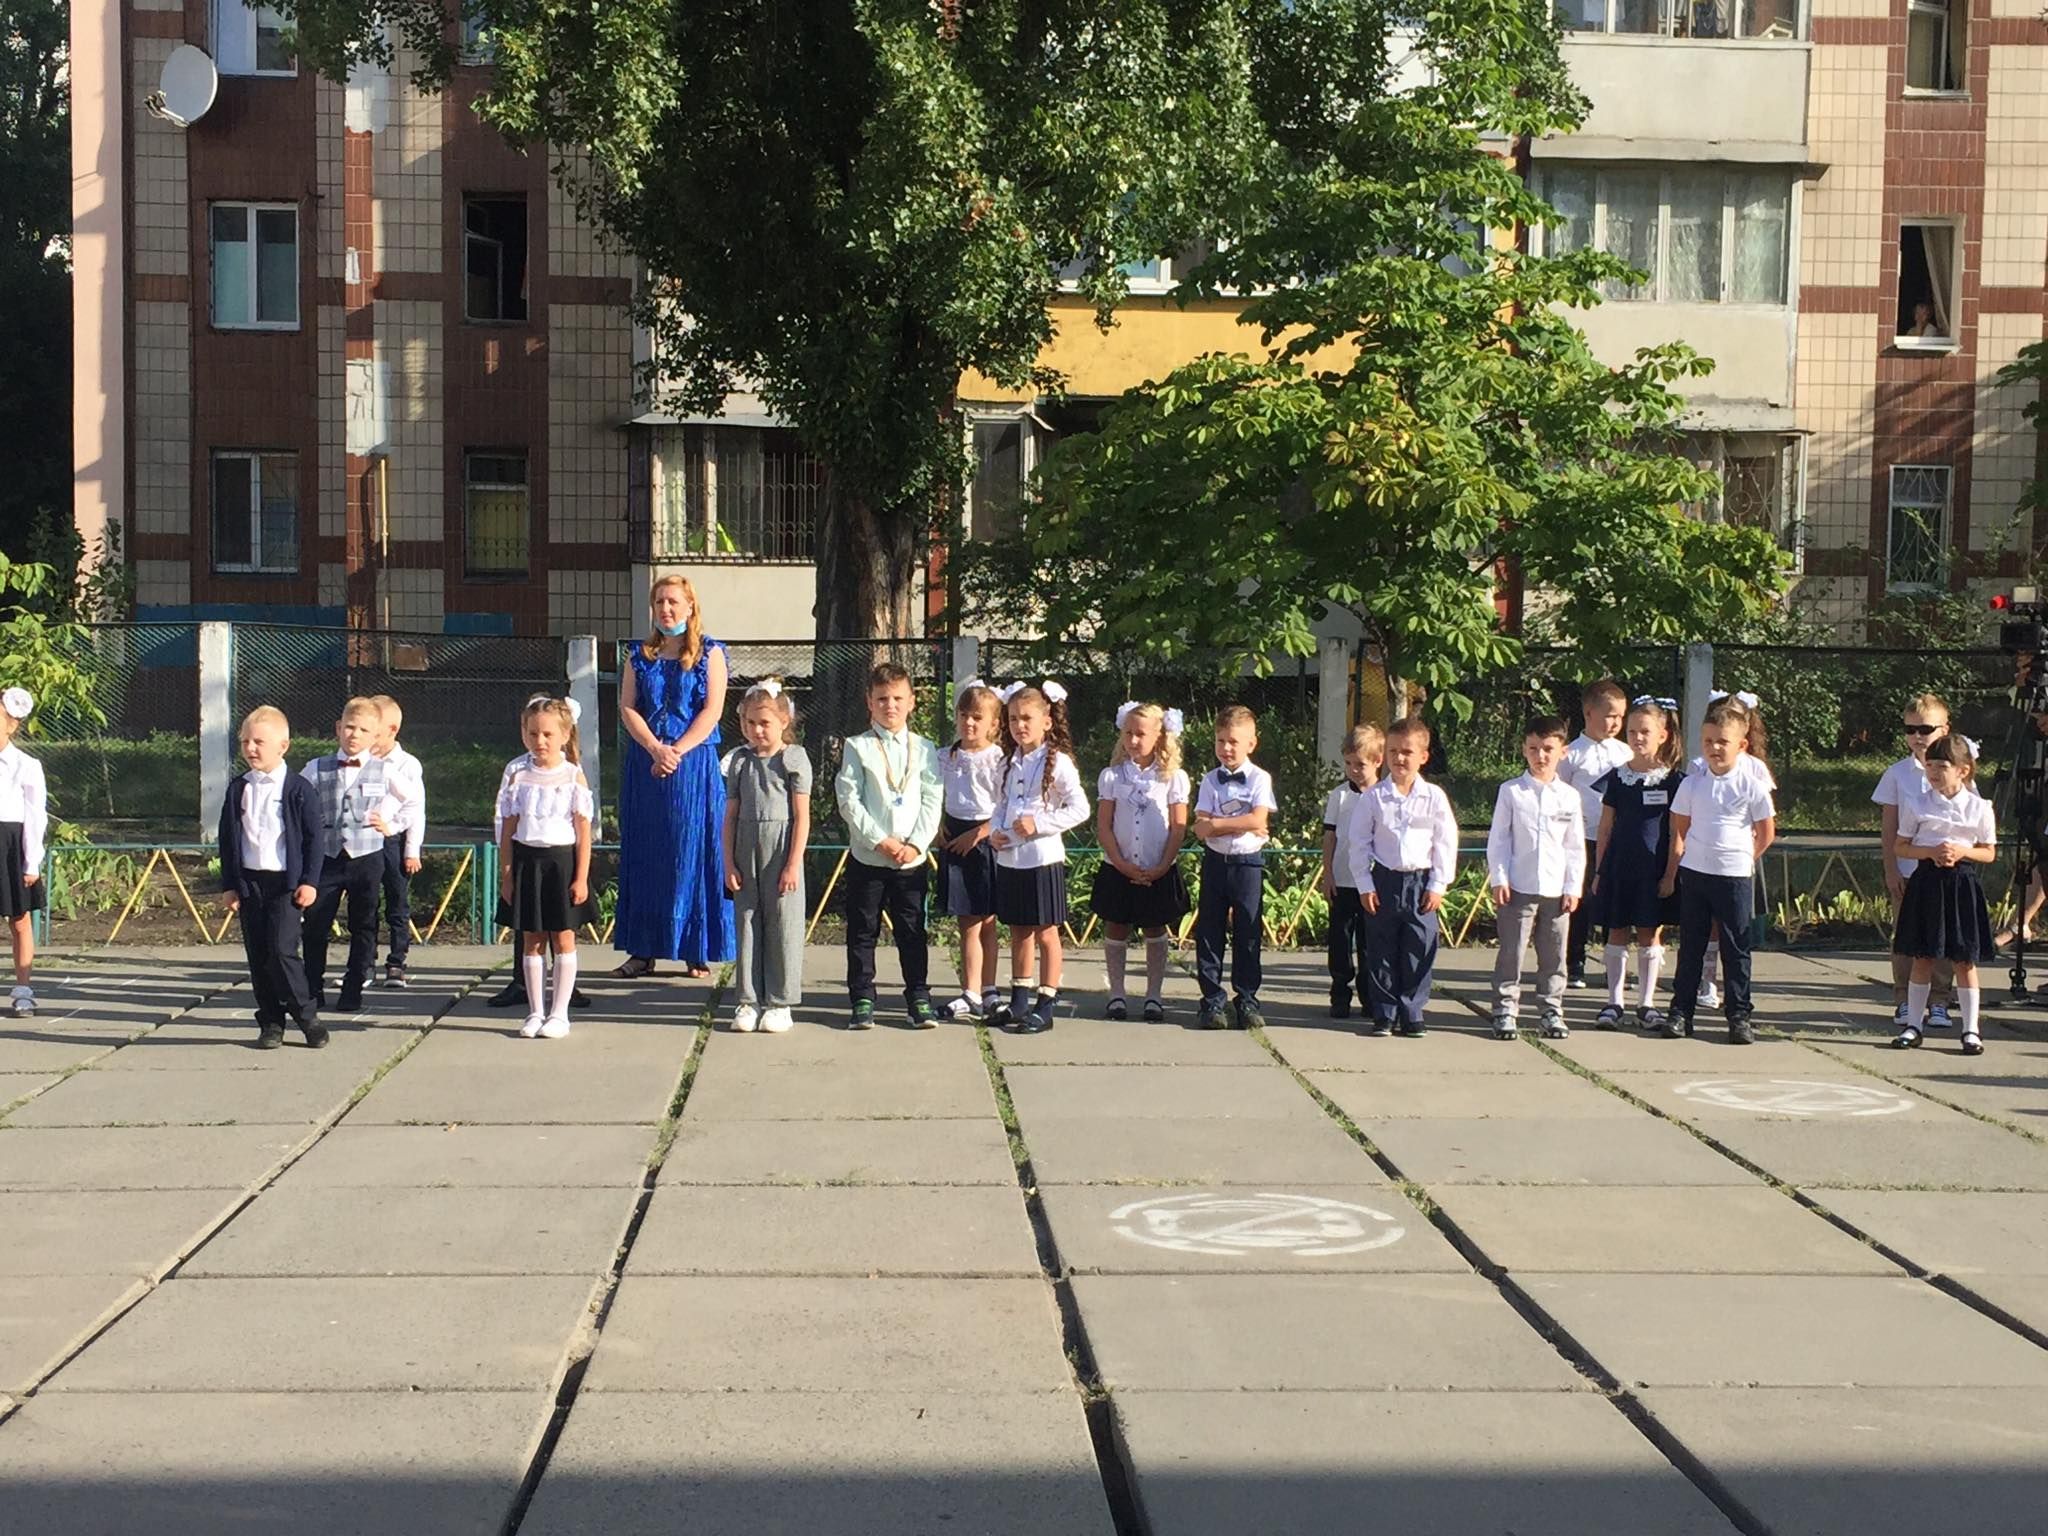 1 вересня 2020 в школах України: фото учнів з початку навчального року